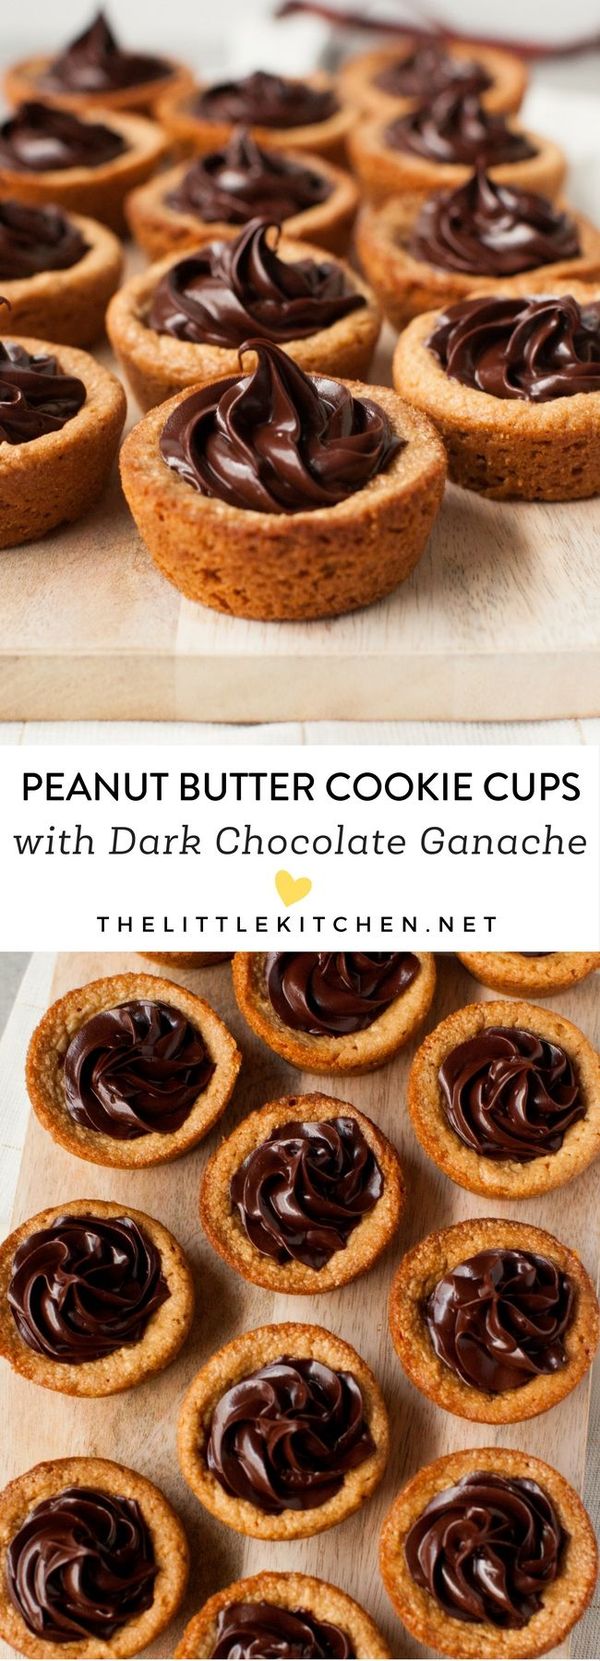 Peanut Butter Cookie Cups with Dark Chocolate Ganache